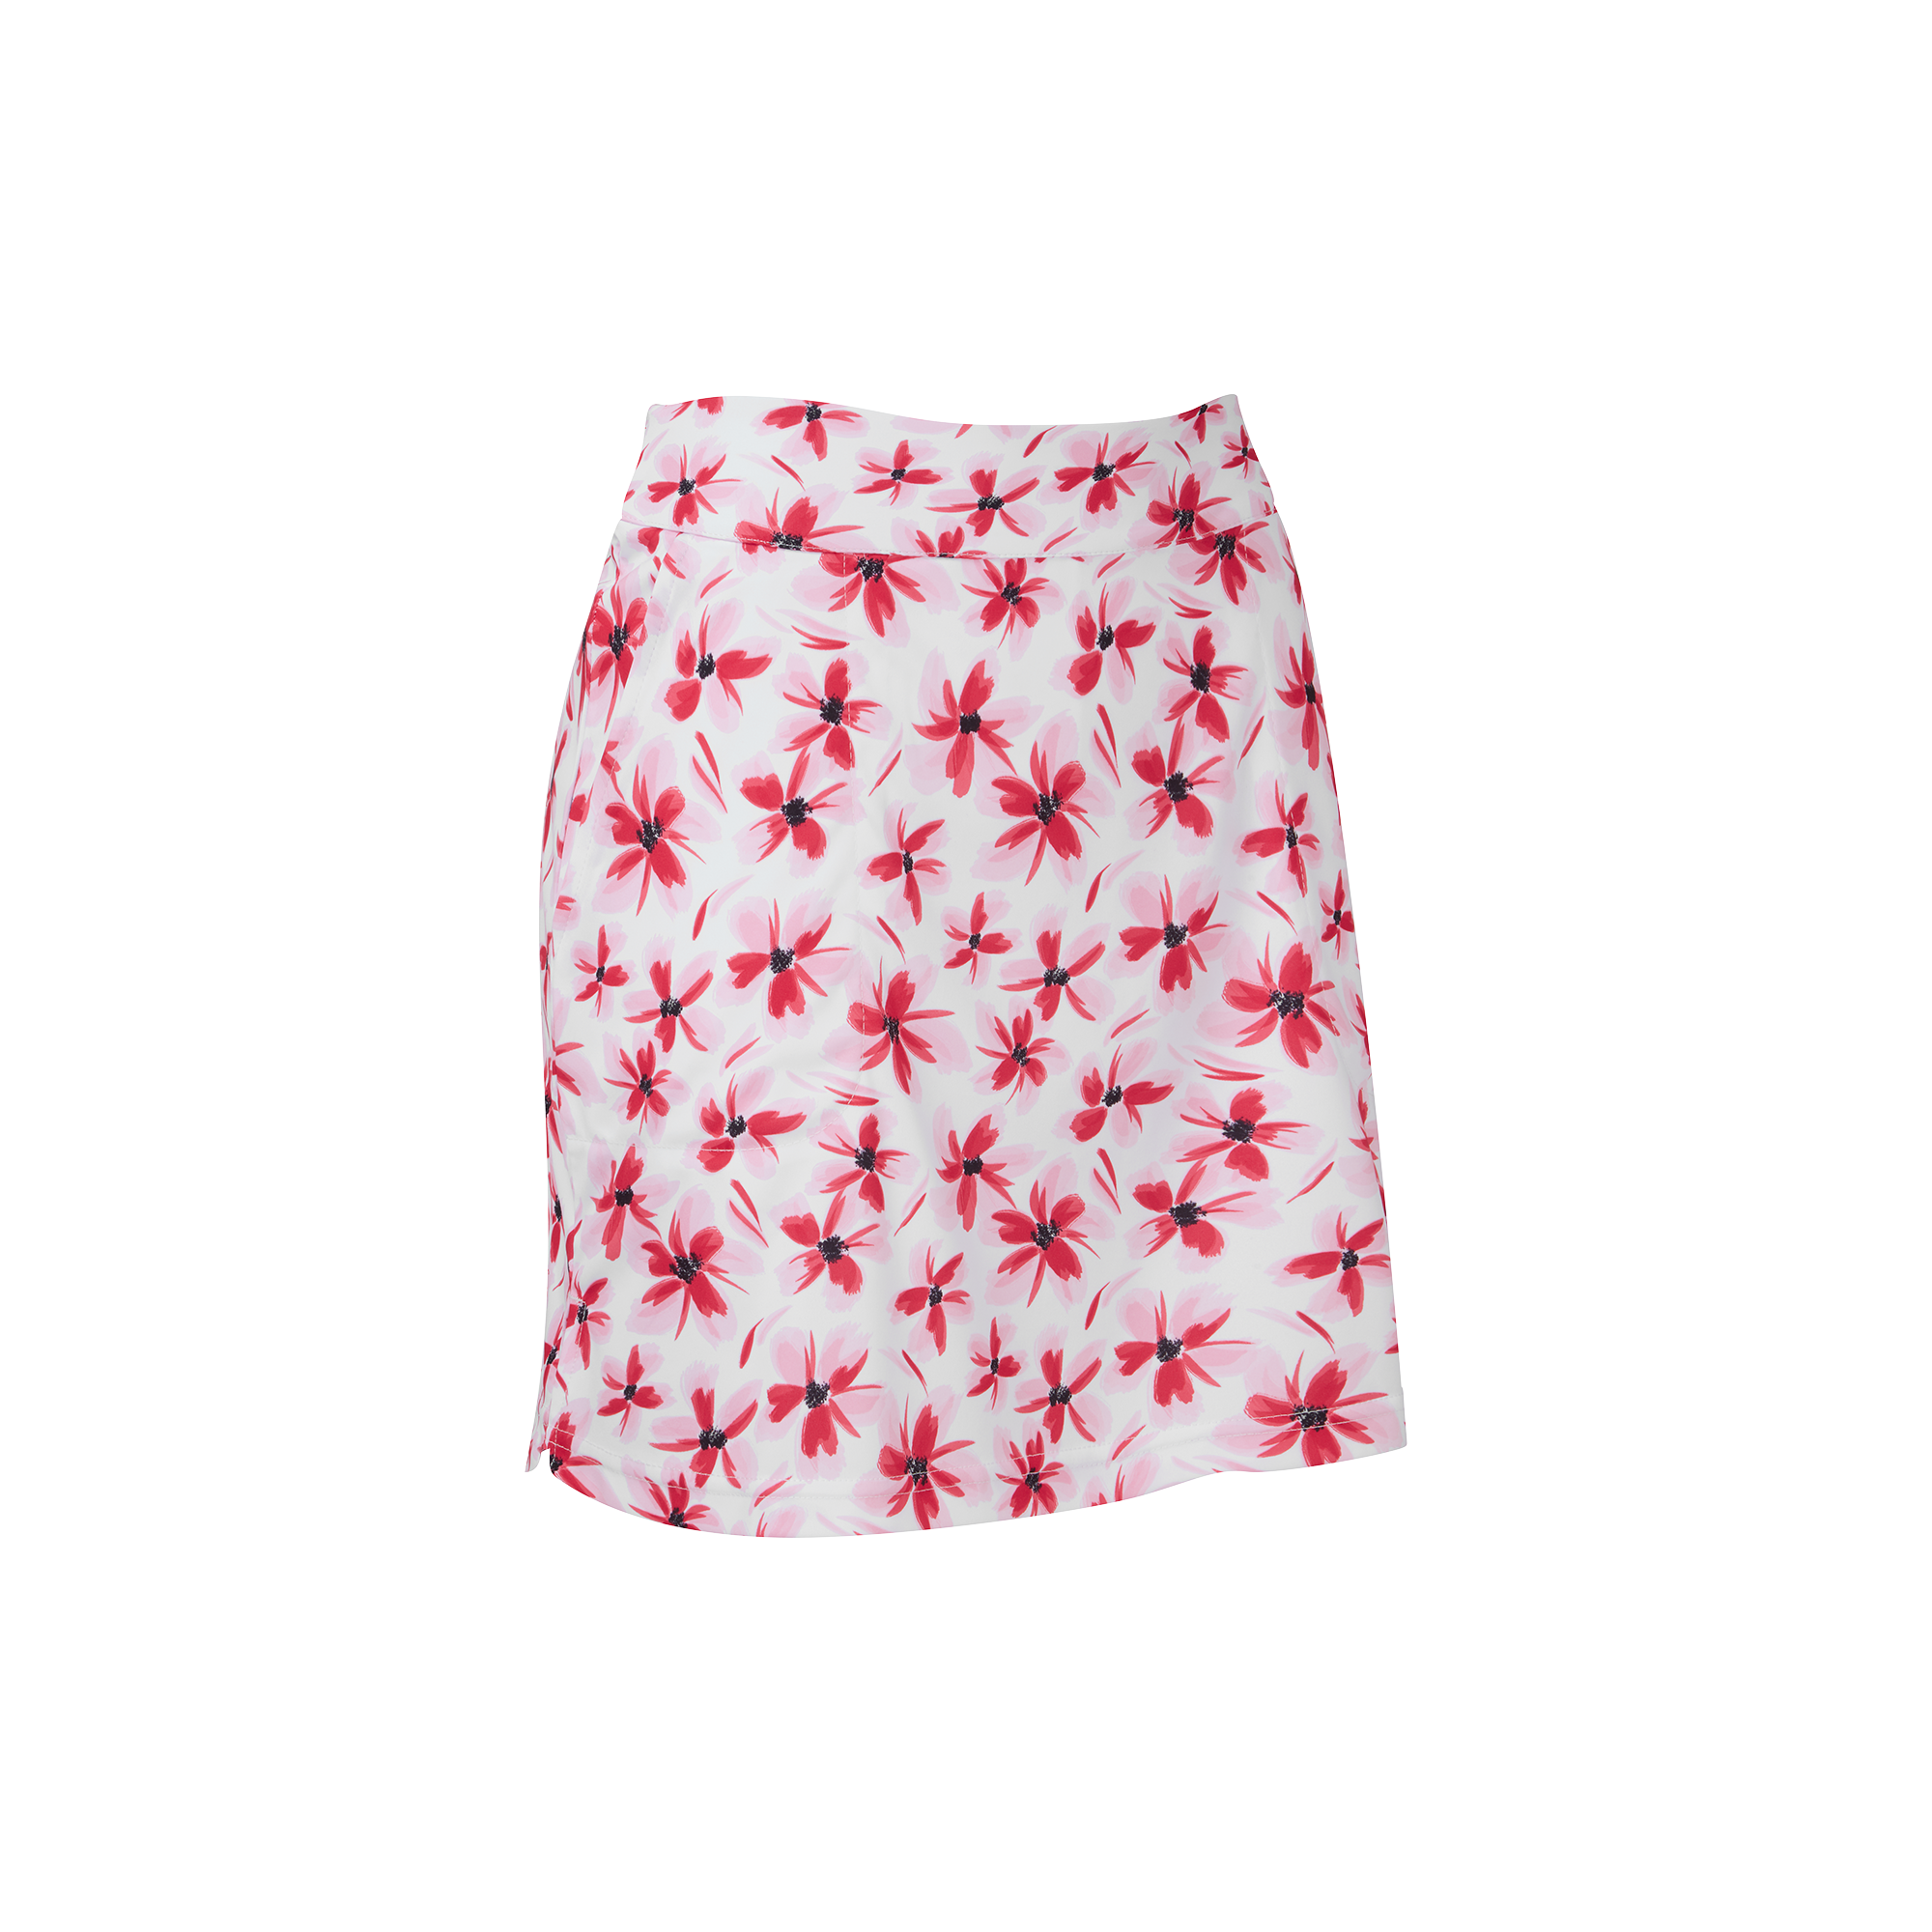 FootJoy Floral Print Knit dámská golfová sukně, bílá/červená, vel. S